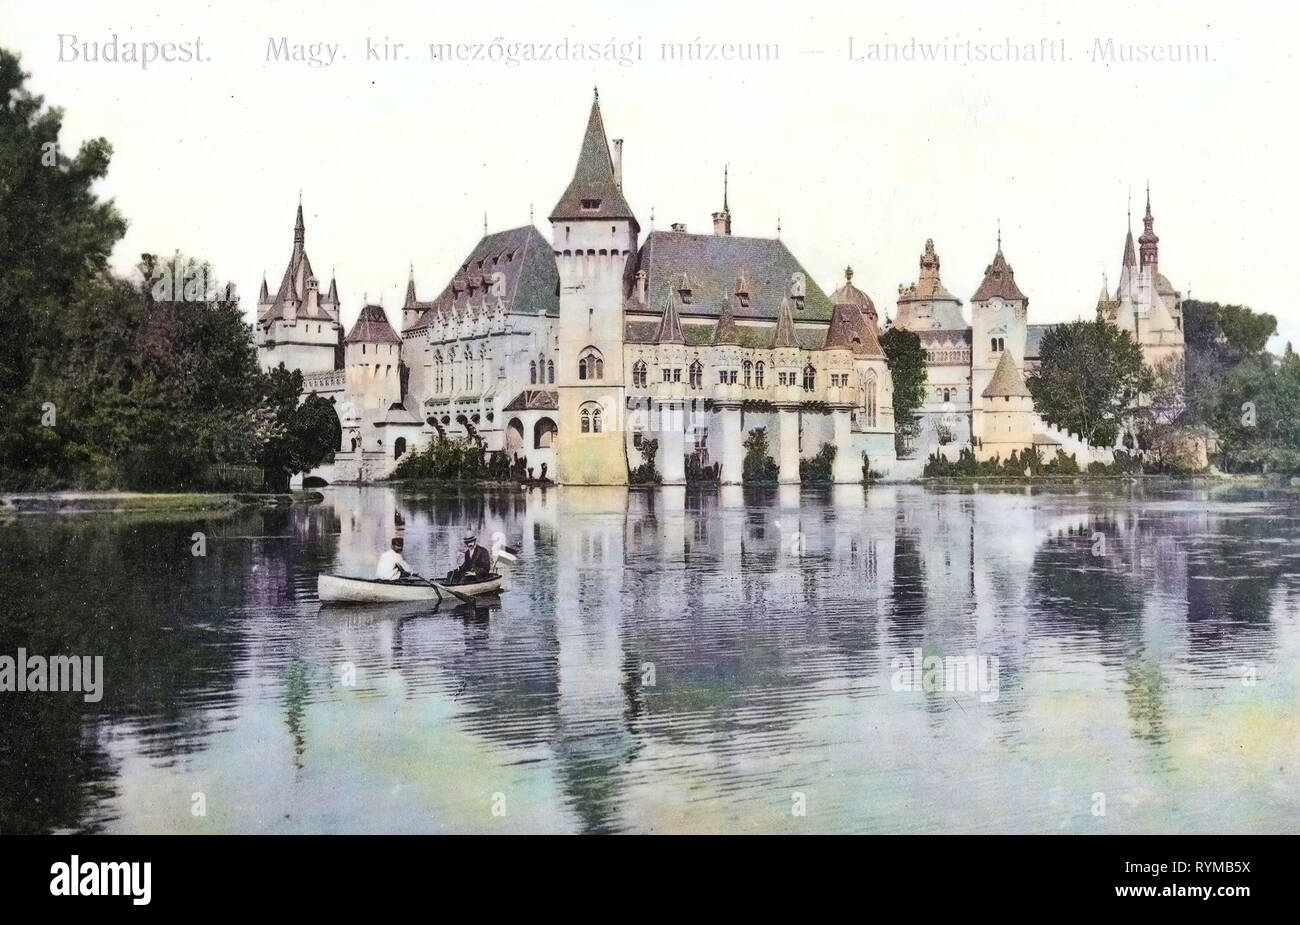 Immagini storiche del Castello Vajdahunyad (Budapest), 1905, Budapest, Museo Landwirtschaftliches, Ruderpartie, Ungheria Foto Stock